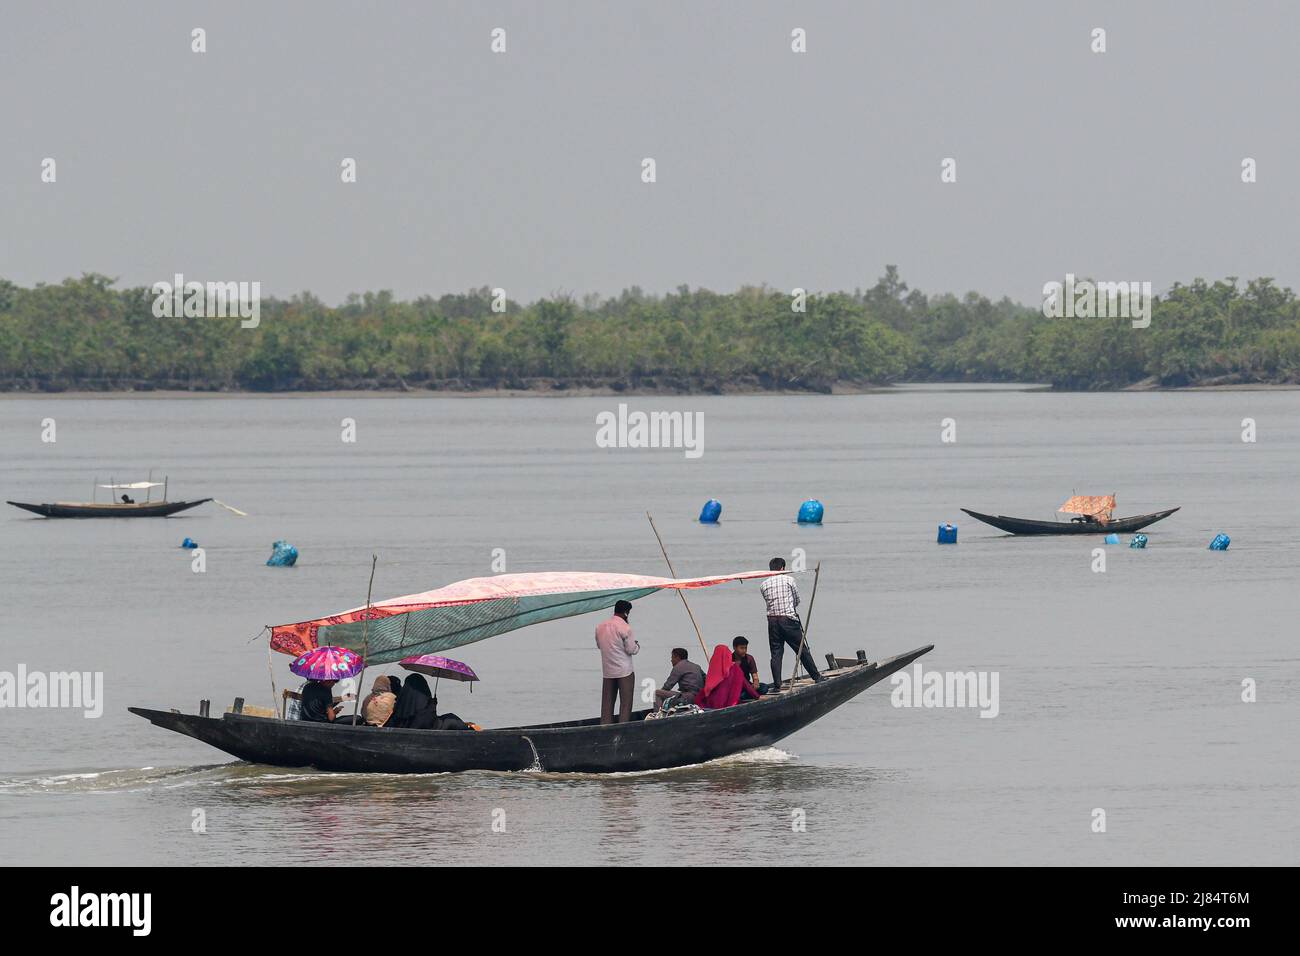 Menschen sahen, wie sie den Kholpatua-Fluss mit einem Boot in der Nähe des Sundarban-Waldes bei Shyamnagar im Satkhira-Bezirk überquerten. Tausende von Männern und Frauen gehen jeden Tag in den Sundarbans-Wald im Süden von Bangladesch, um Honig zu sammeln, Brennholz zu sammeln oder Fische, Krebse zu fangen und sich selbst einem großen Risiko für einen Tiger-Angriff zu aussetzen. Bangladesch ist eines der Länder, die am stärksten von den Auswirkungen des Klimawandels betroffen sind. Die regelmäßigen und schweren Naturgefahren, unter denen Bangladesch bereits unter tropischen Wirbelstürmen, Flusserosion, Überschwemmungen, Erdrutschen und Dürren leidet, werden sich in der Intensität und Häufigkeit als erhöhen Stockfoto